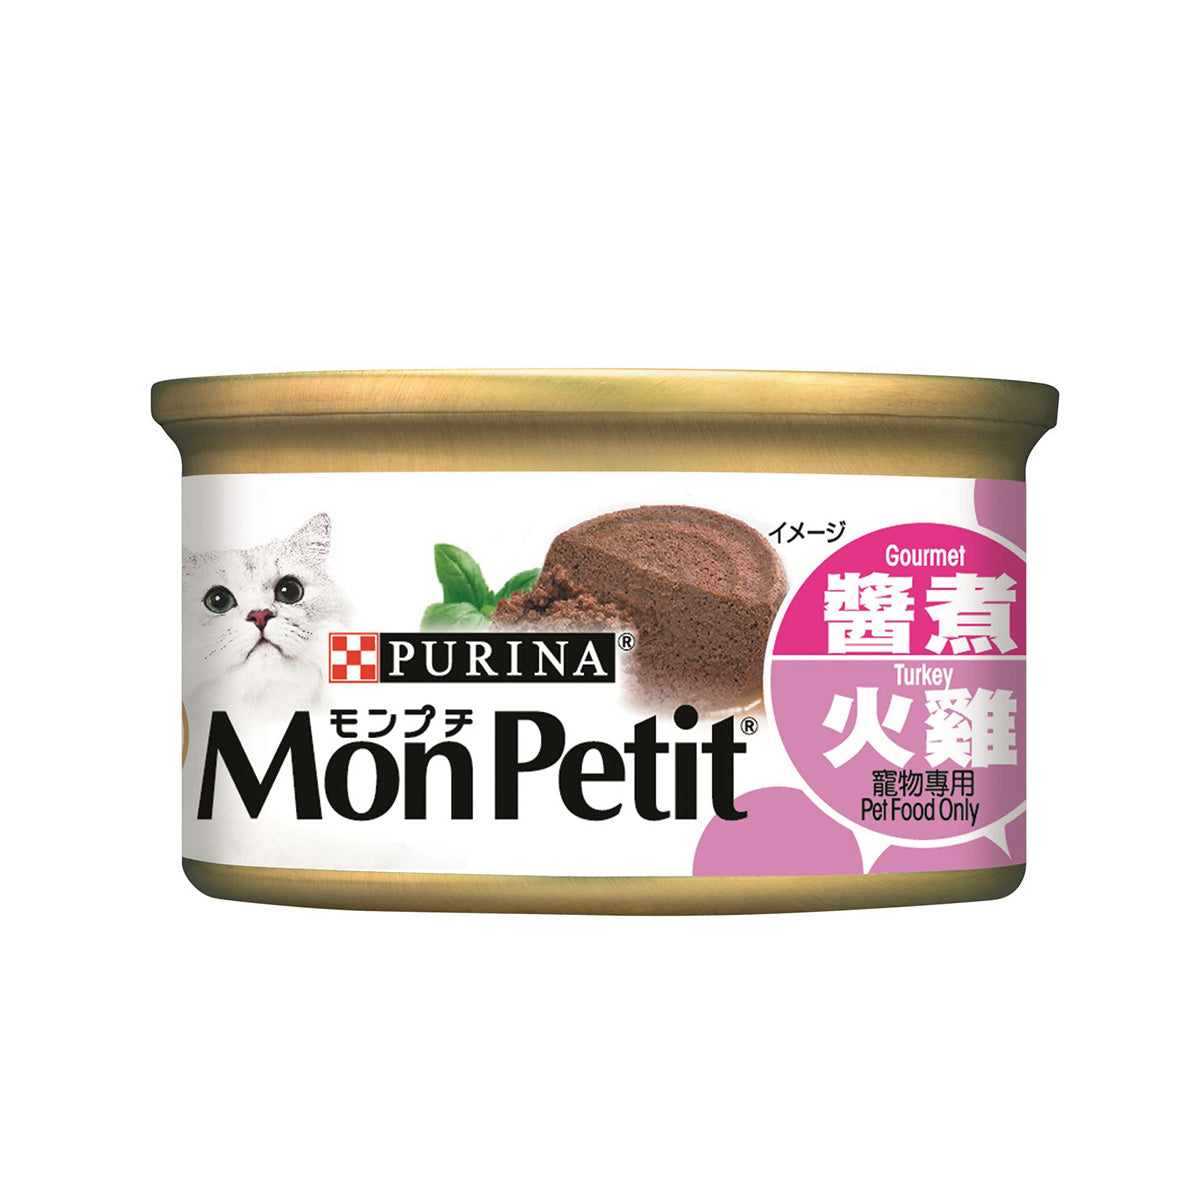 MonPetit 貓倍麗 罐頭